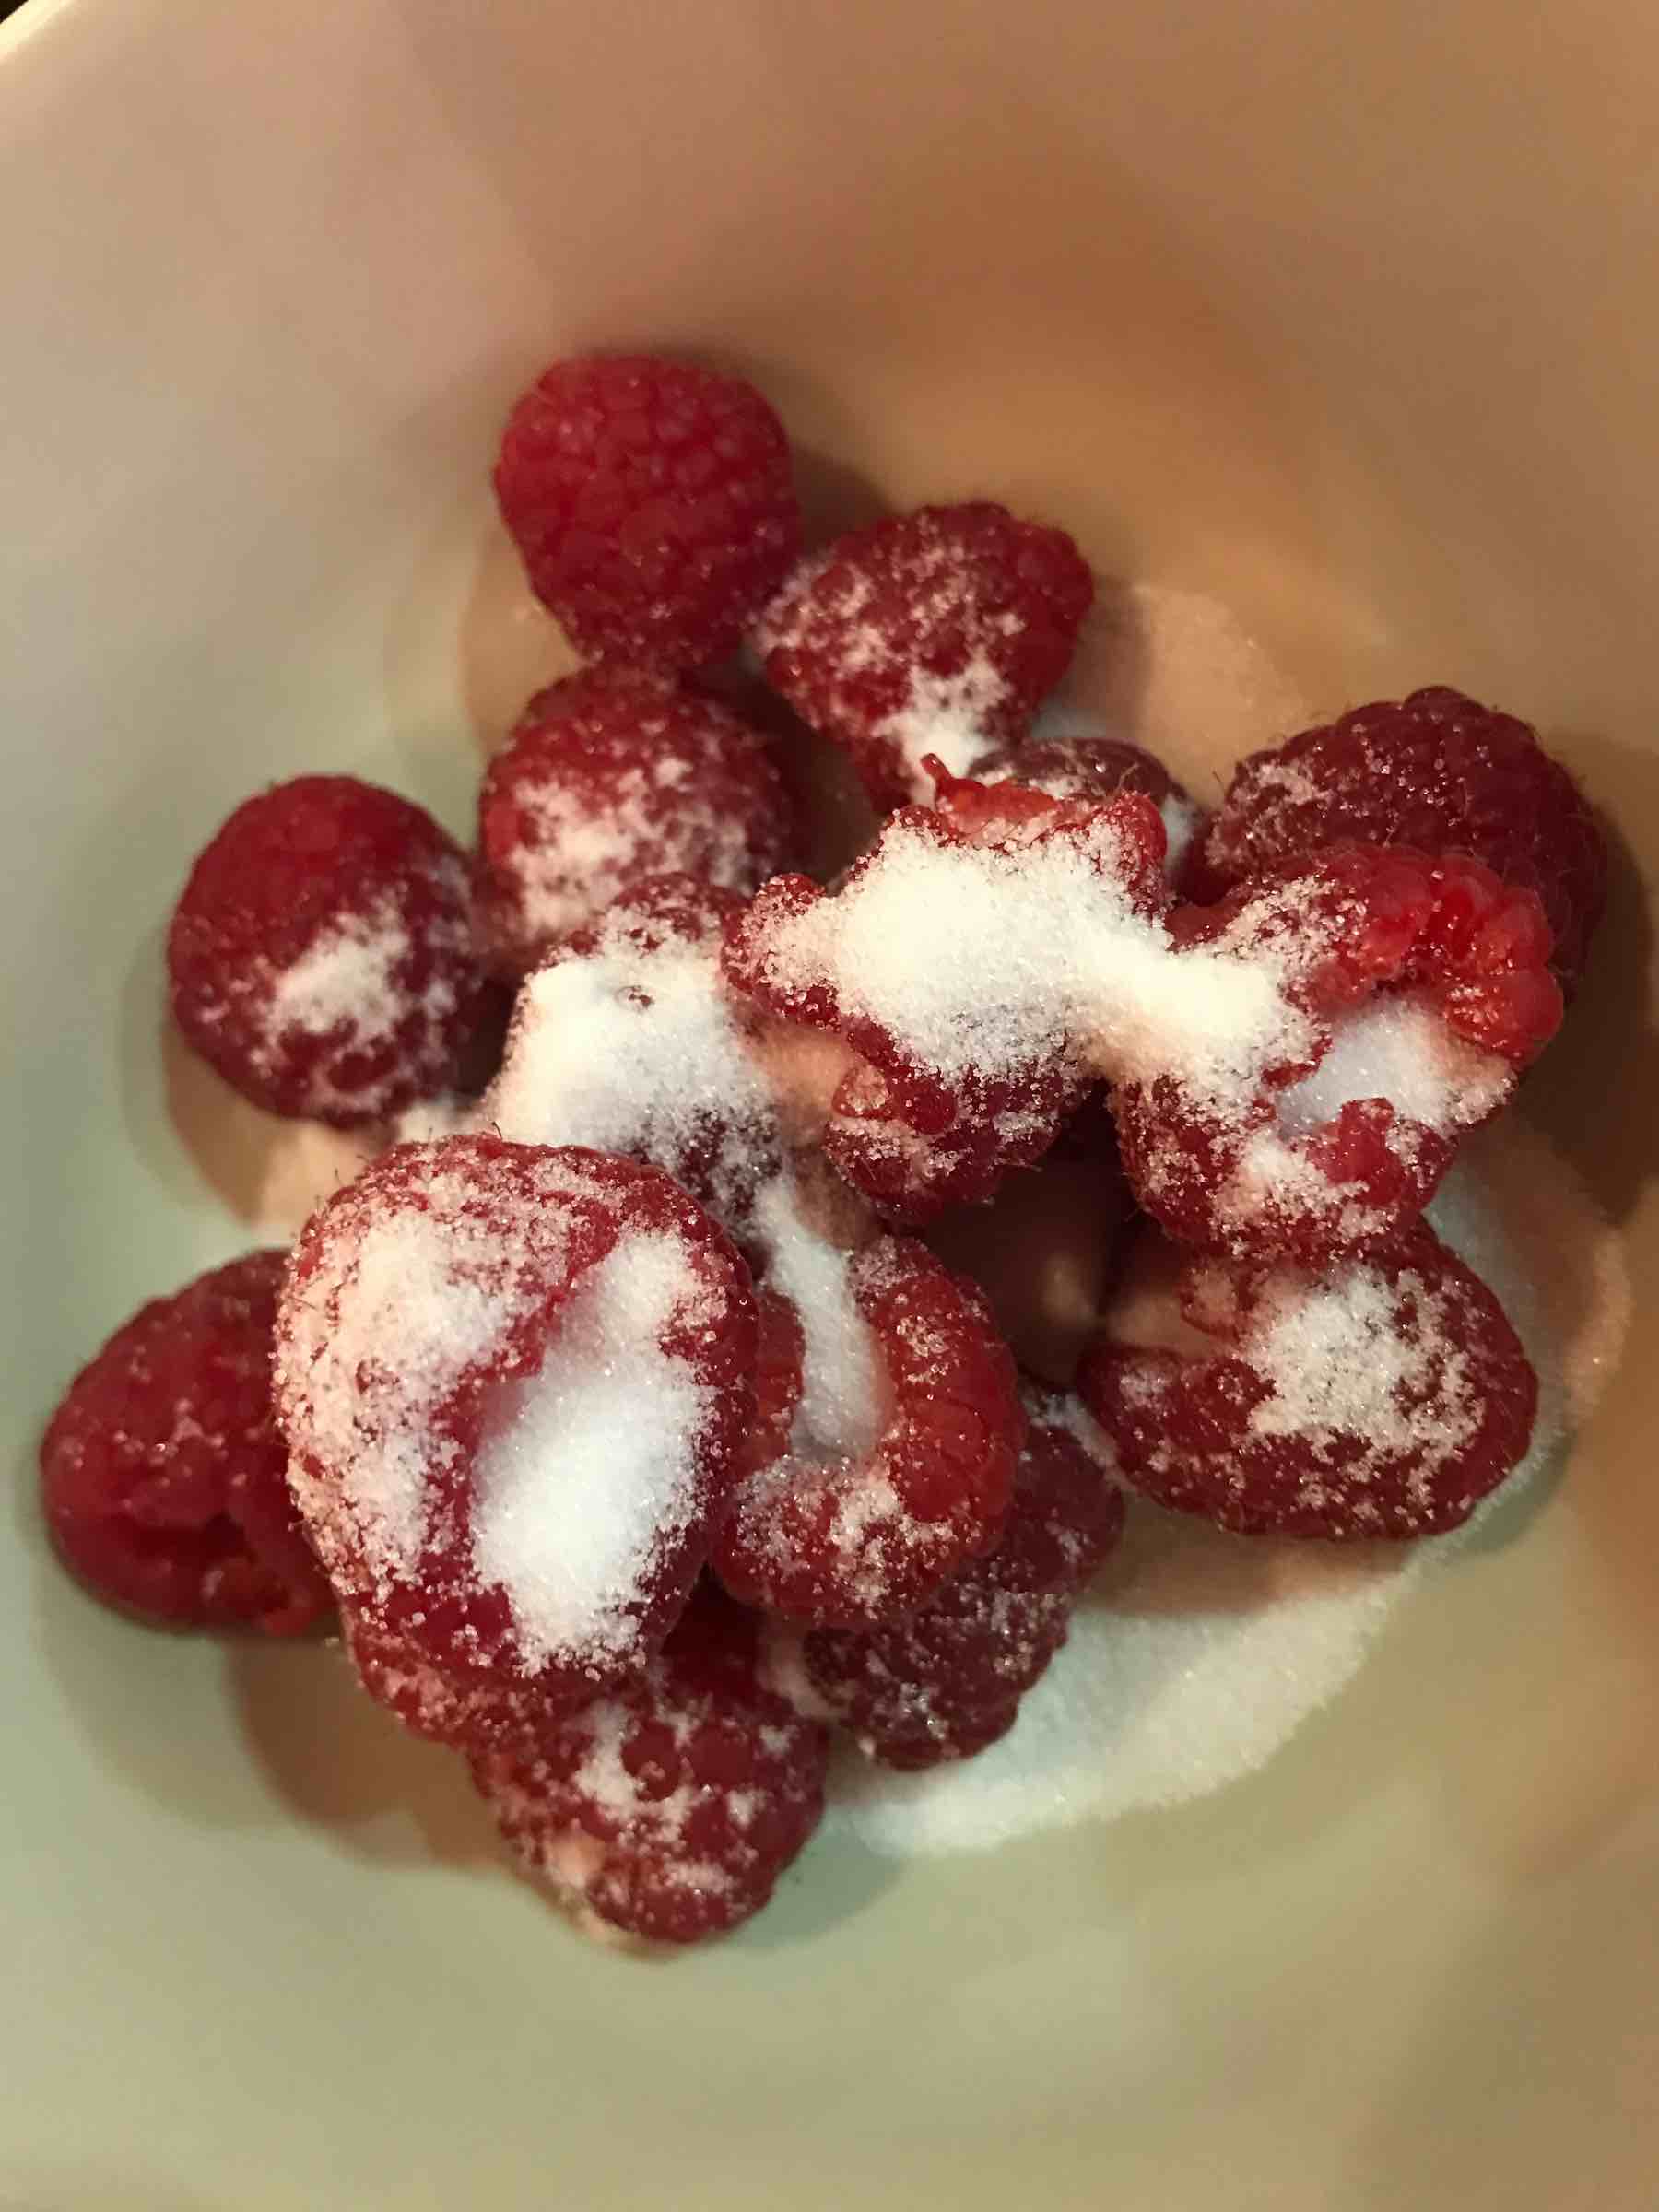 Sugar sprinkled over raspberries